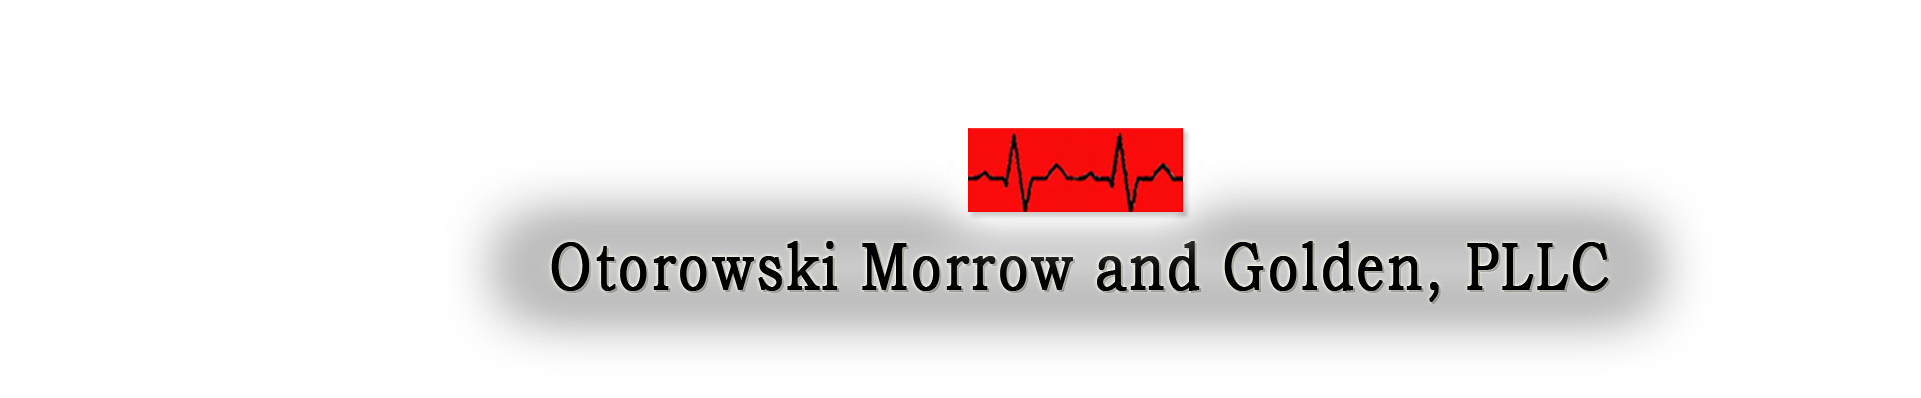 Logo for Otorowski, Morrow and Golden PLLC